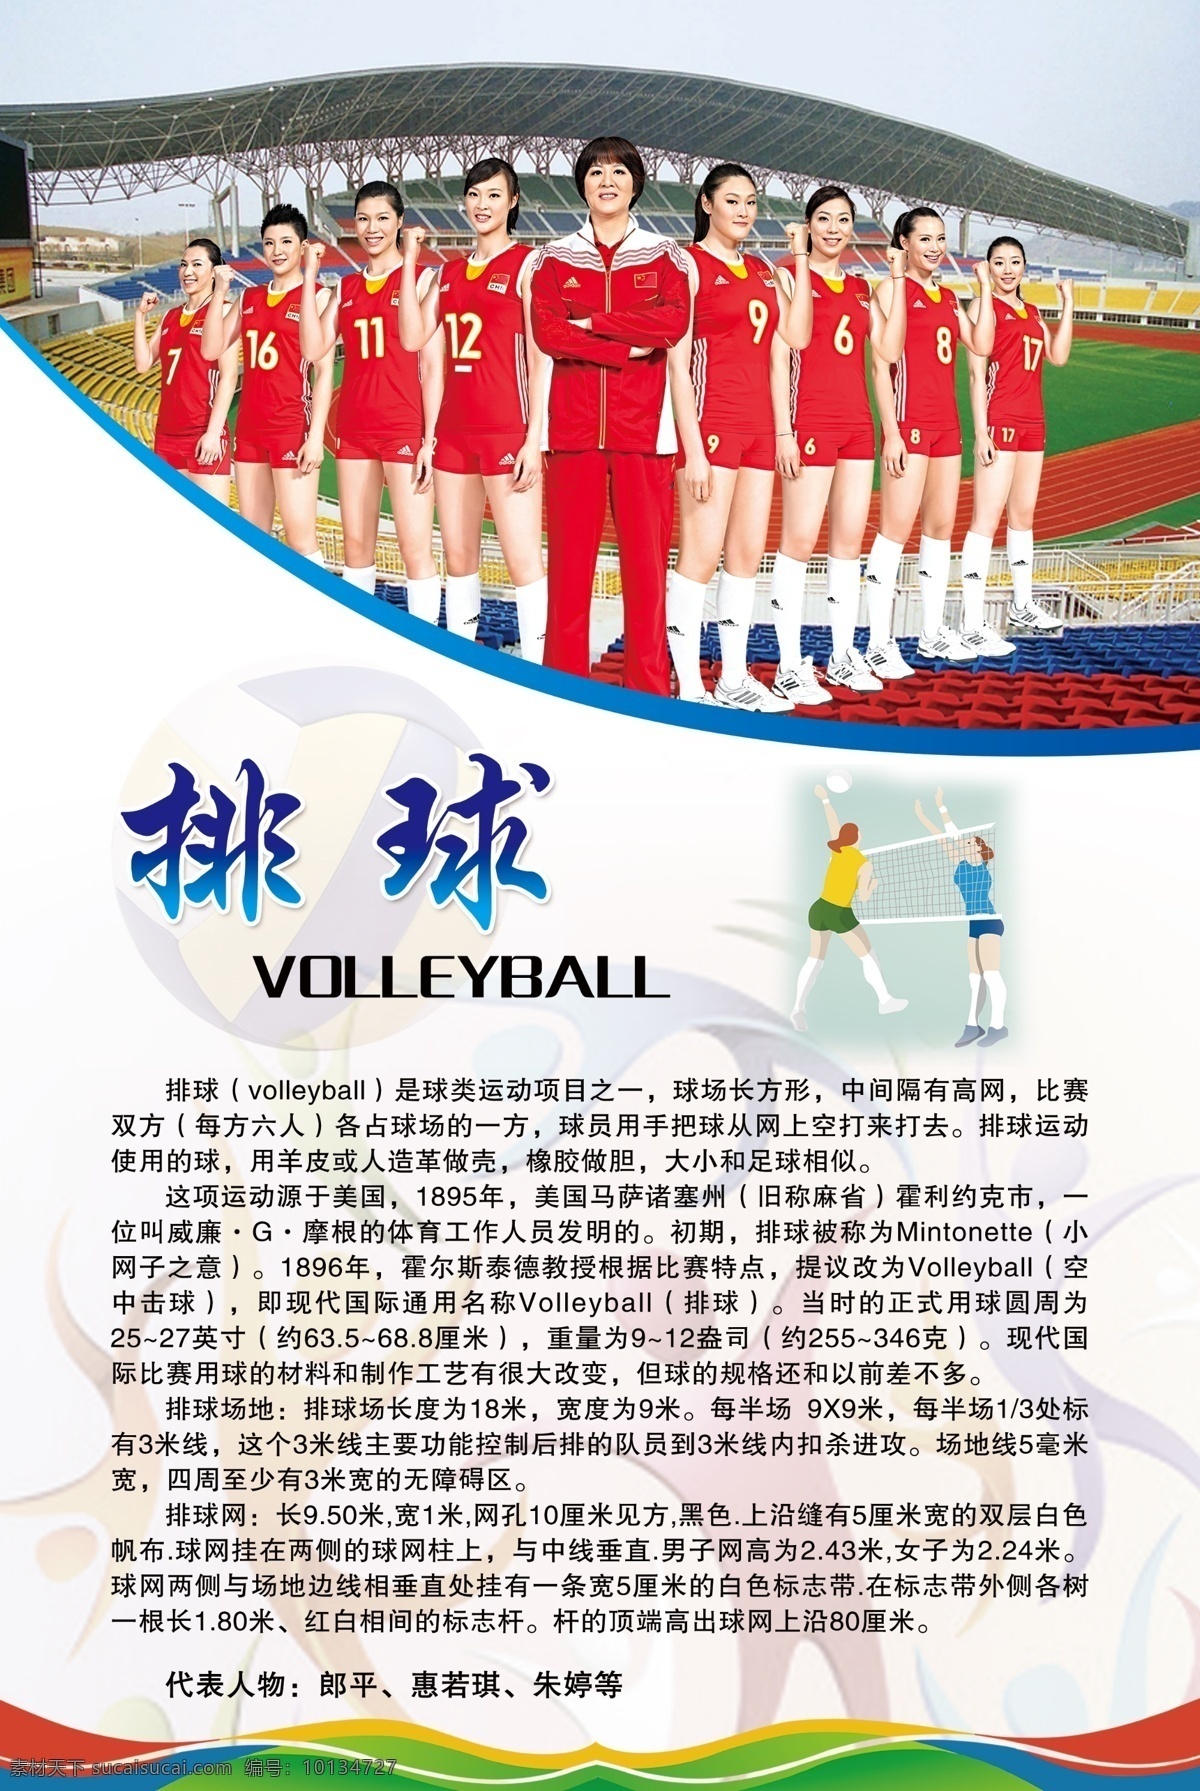 中国运动员 体育明星简介 体育 体育运动 人物简介 体育人物 运动员简介 运动员 简介 校园文化 体育文化 分层